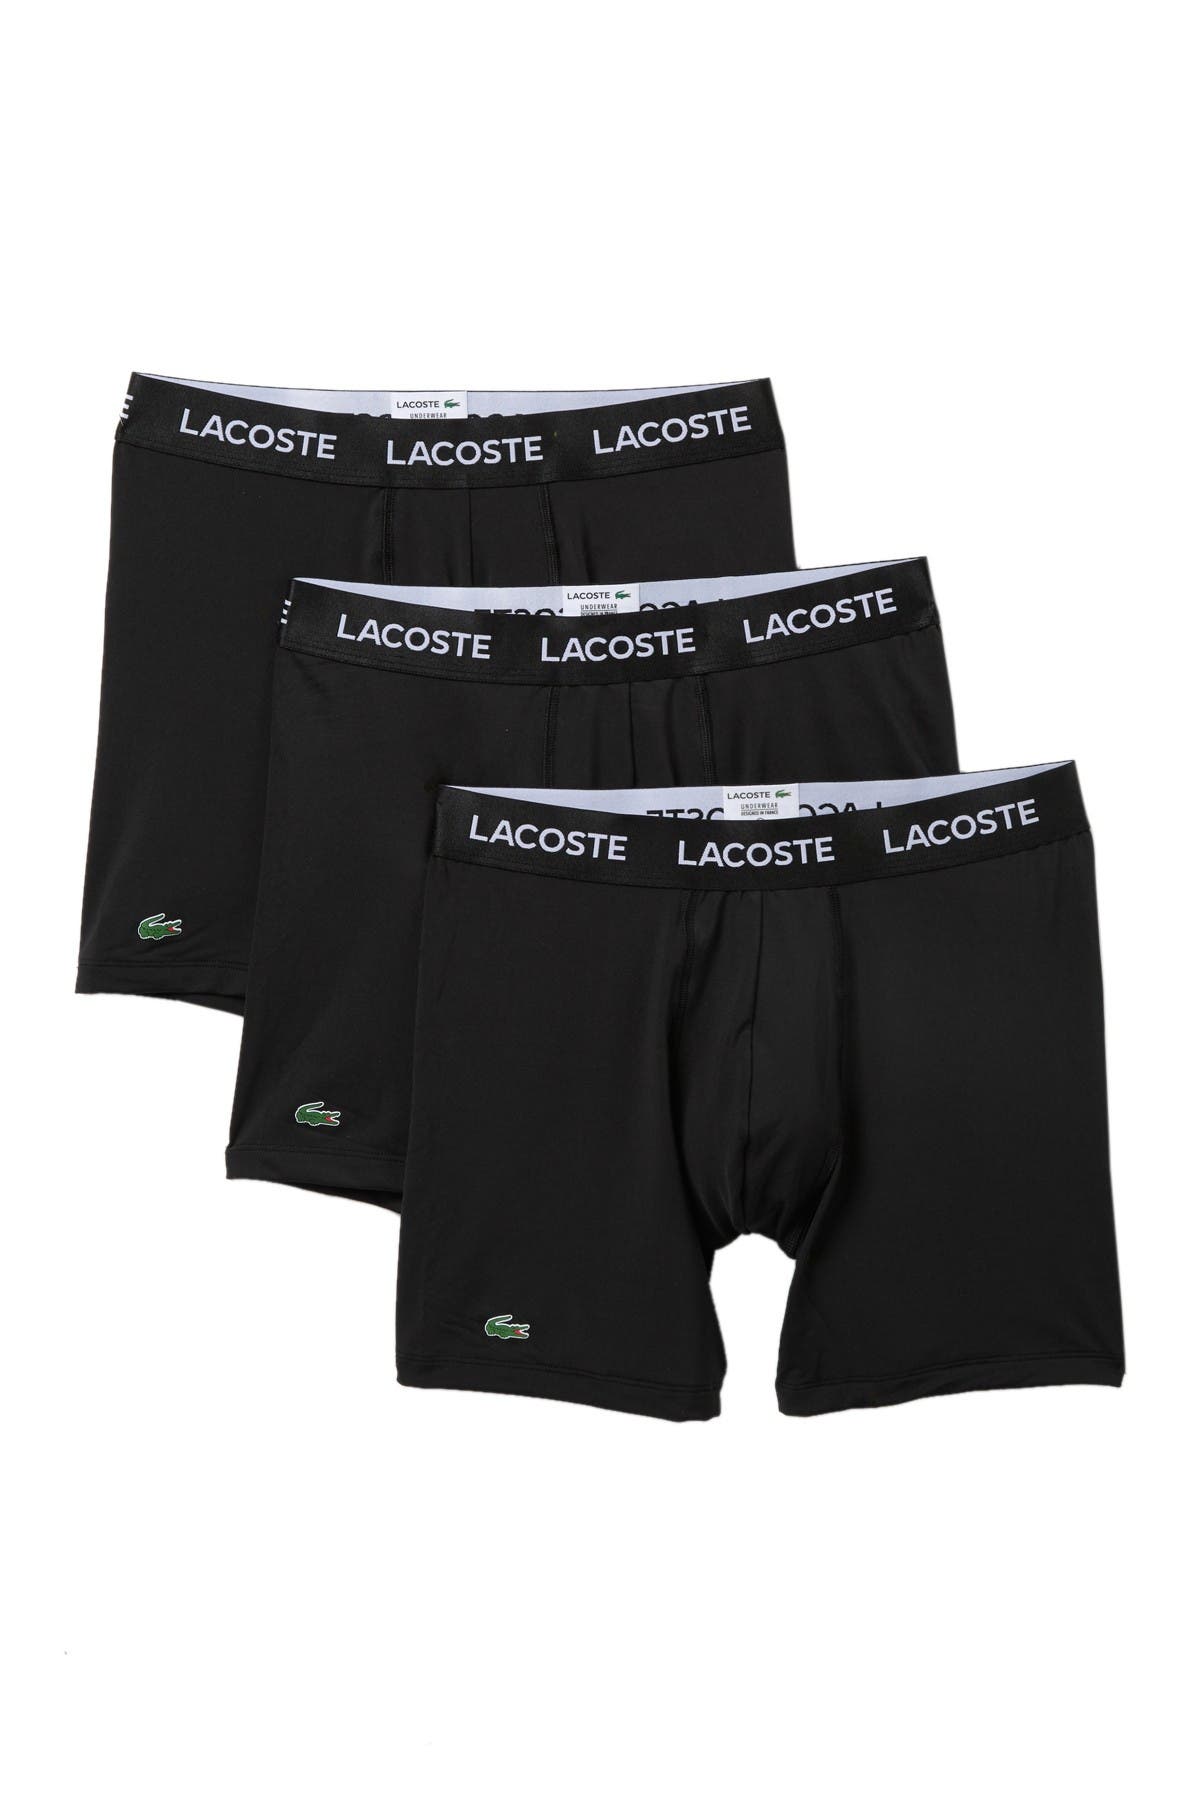 lacoste boxer shorts